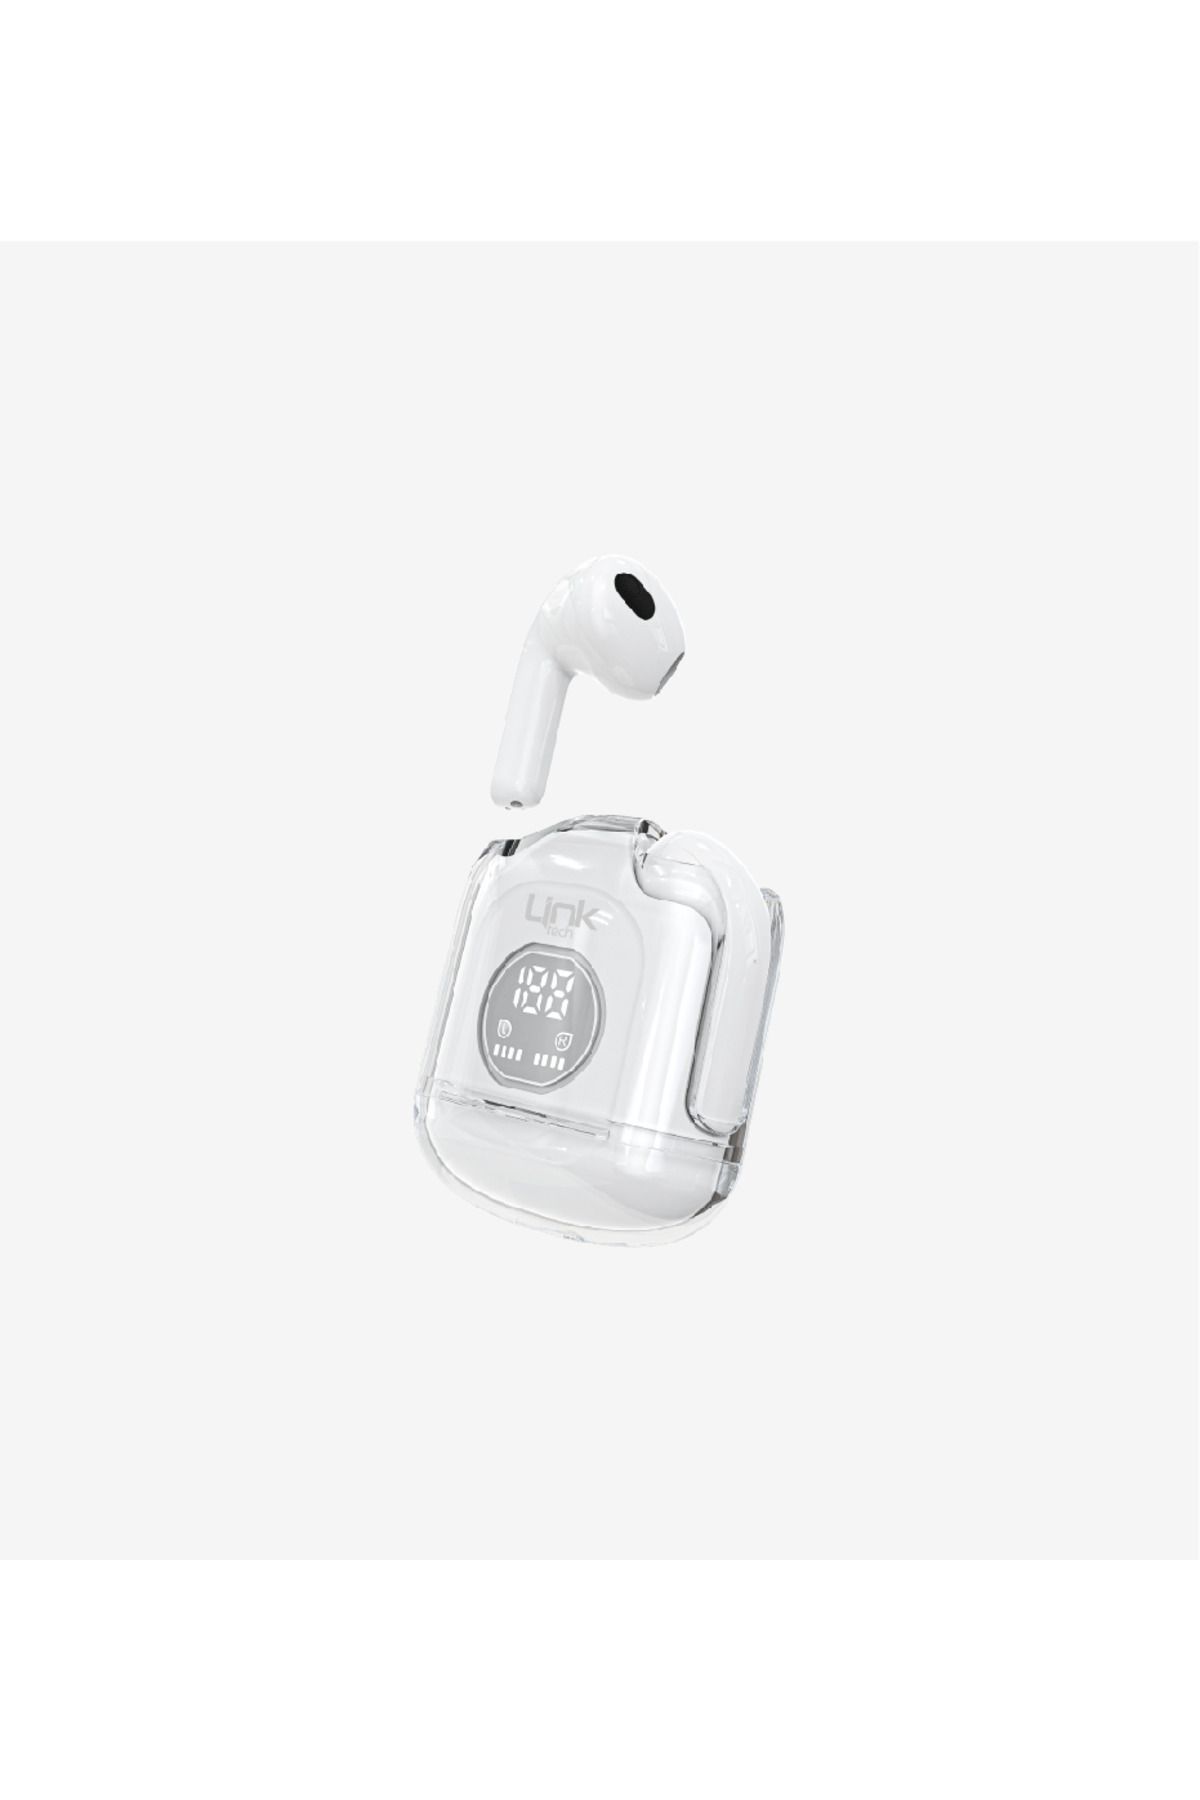 Linktech Link Tech Kablosuz Kulak Içi Bluetooth Kulaklık Şeffaf Tasarım